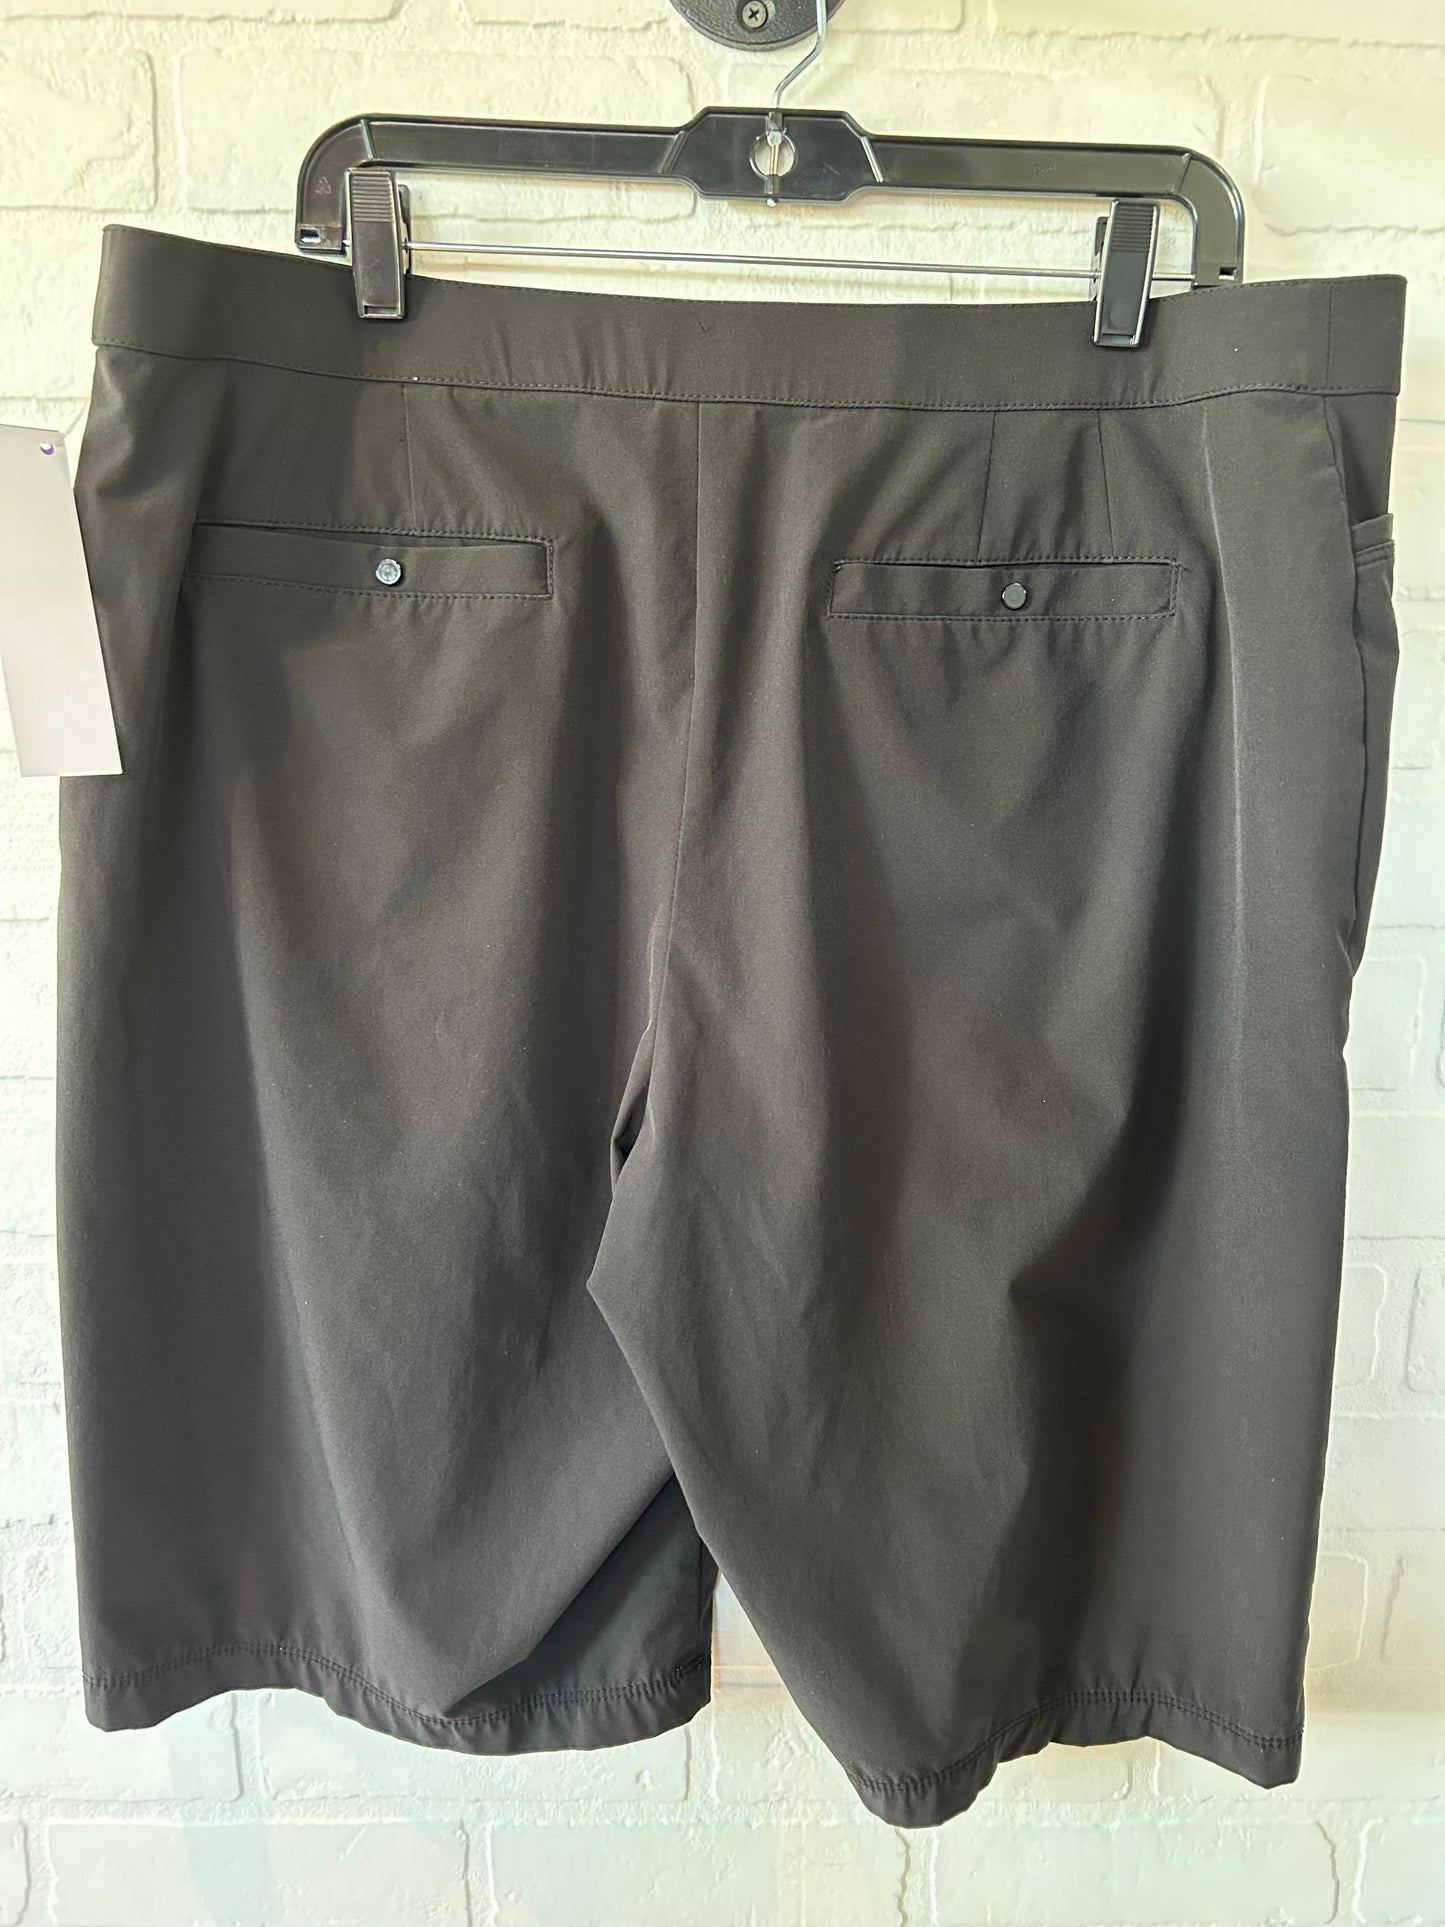 Black Athletic Shorts Zenergy By Chicos, Size 16